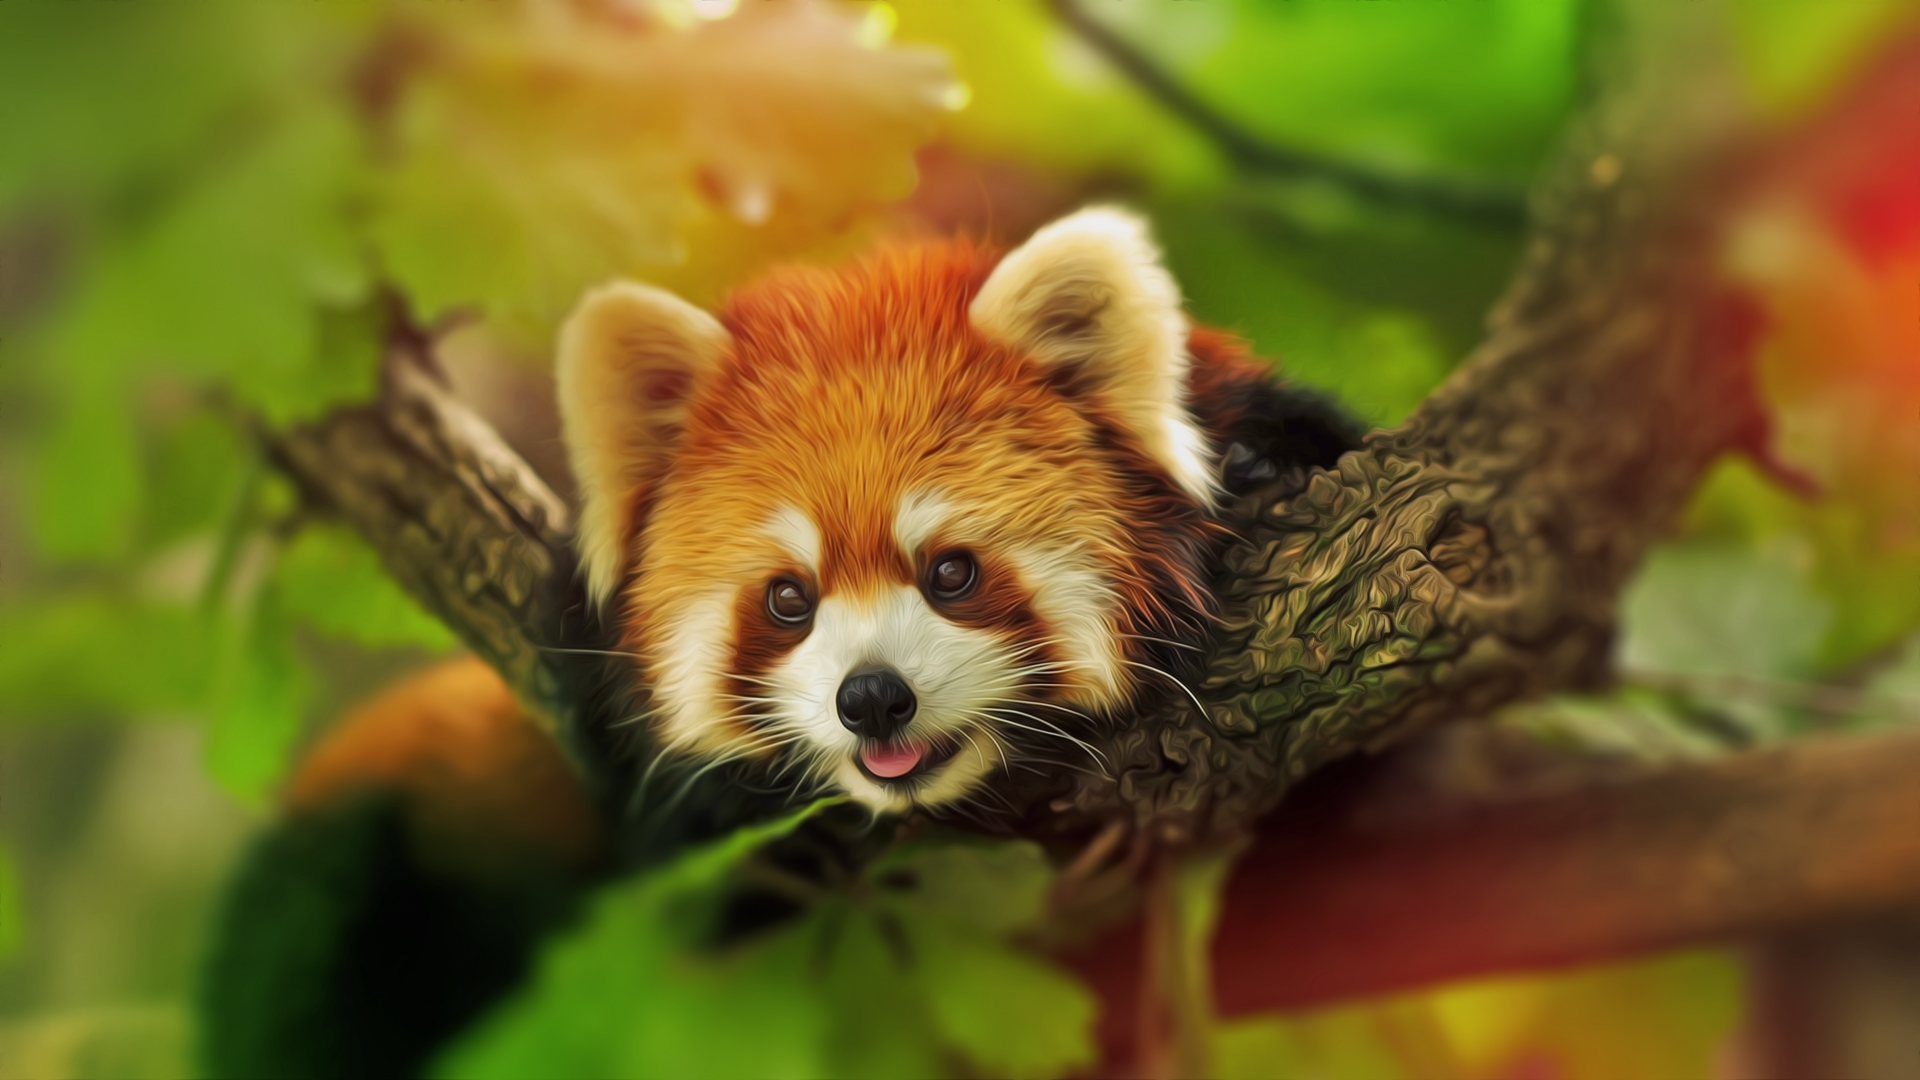 Hình nền Red Panda với hình ảnh tuyệt đẹp và đầy cuốn hút. Bạn sẽ thấy được tính cách độc đáo của loài động vật này qua những hình ảnh hoang dã, đầy ma mị và đầy sức sống. Tải về ngay để cảm nhận sự độc đáo của chúng.